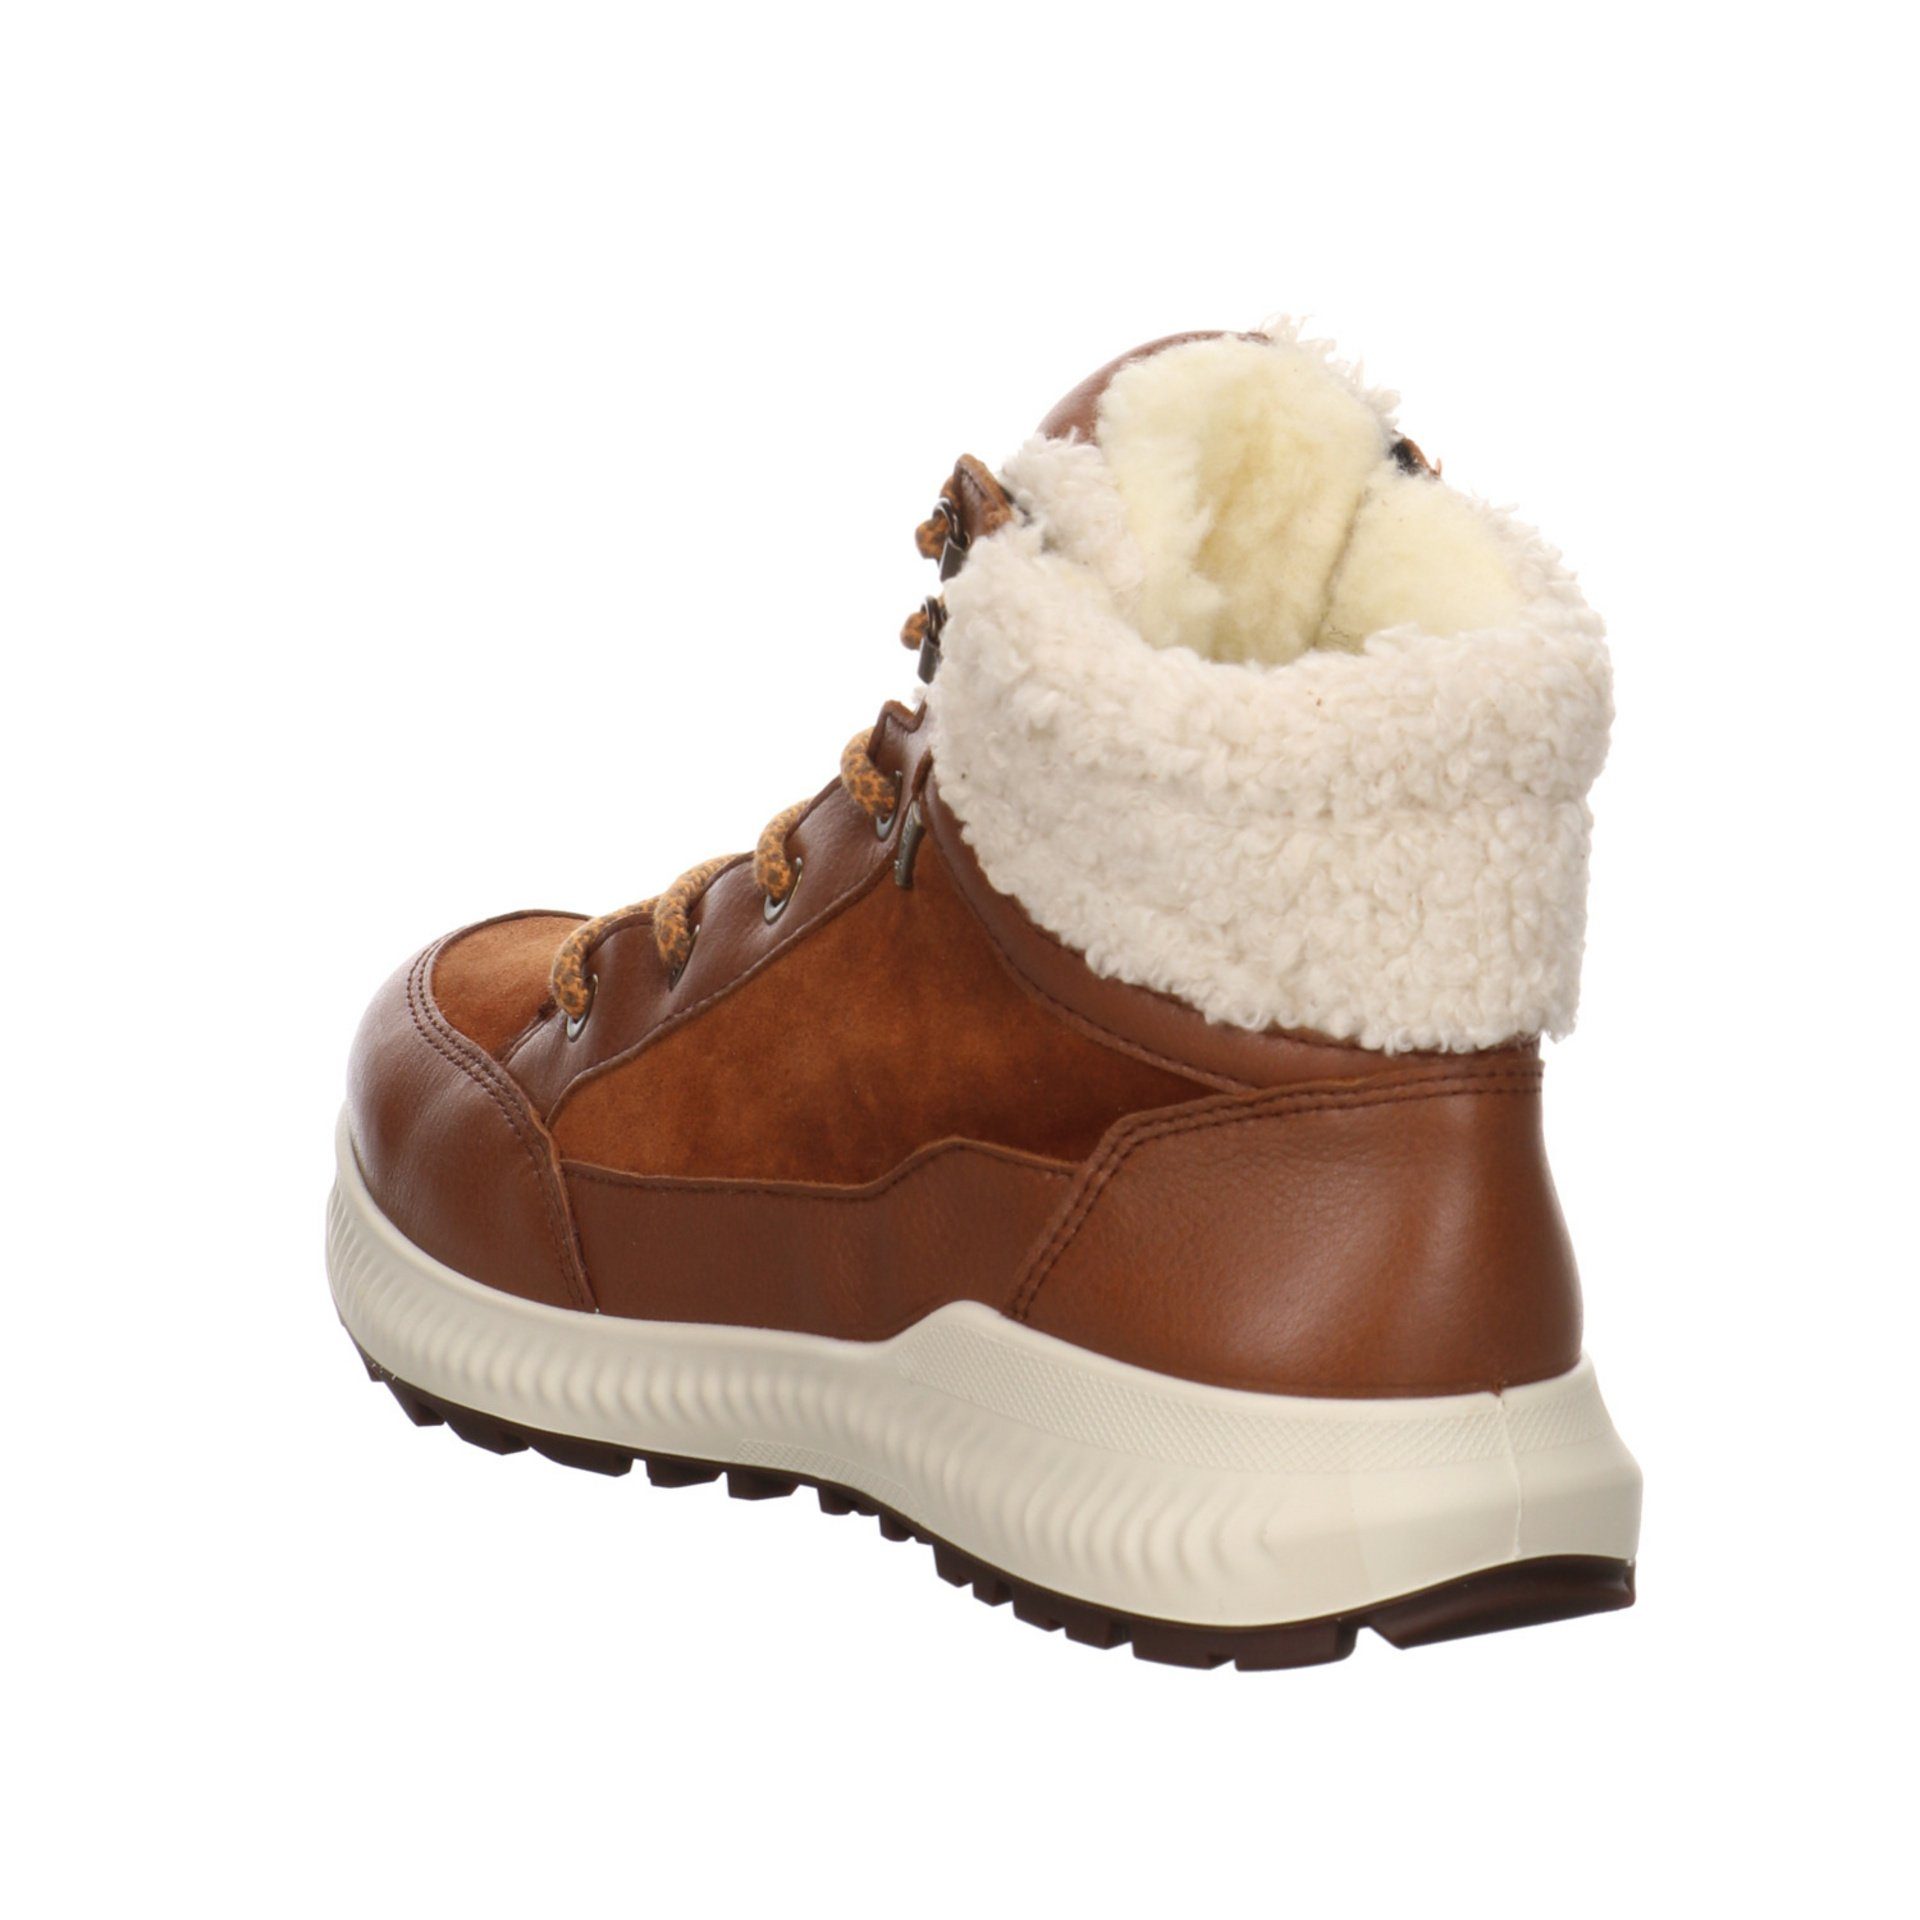 Damen Elegant Stiefel Ara Freizeit Hiker braun 046745 Schuhe Leder-/Textilkombination Stiefelette Boots